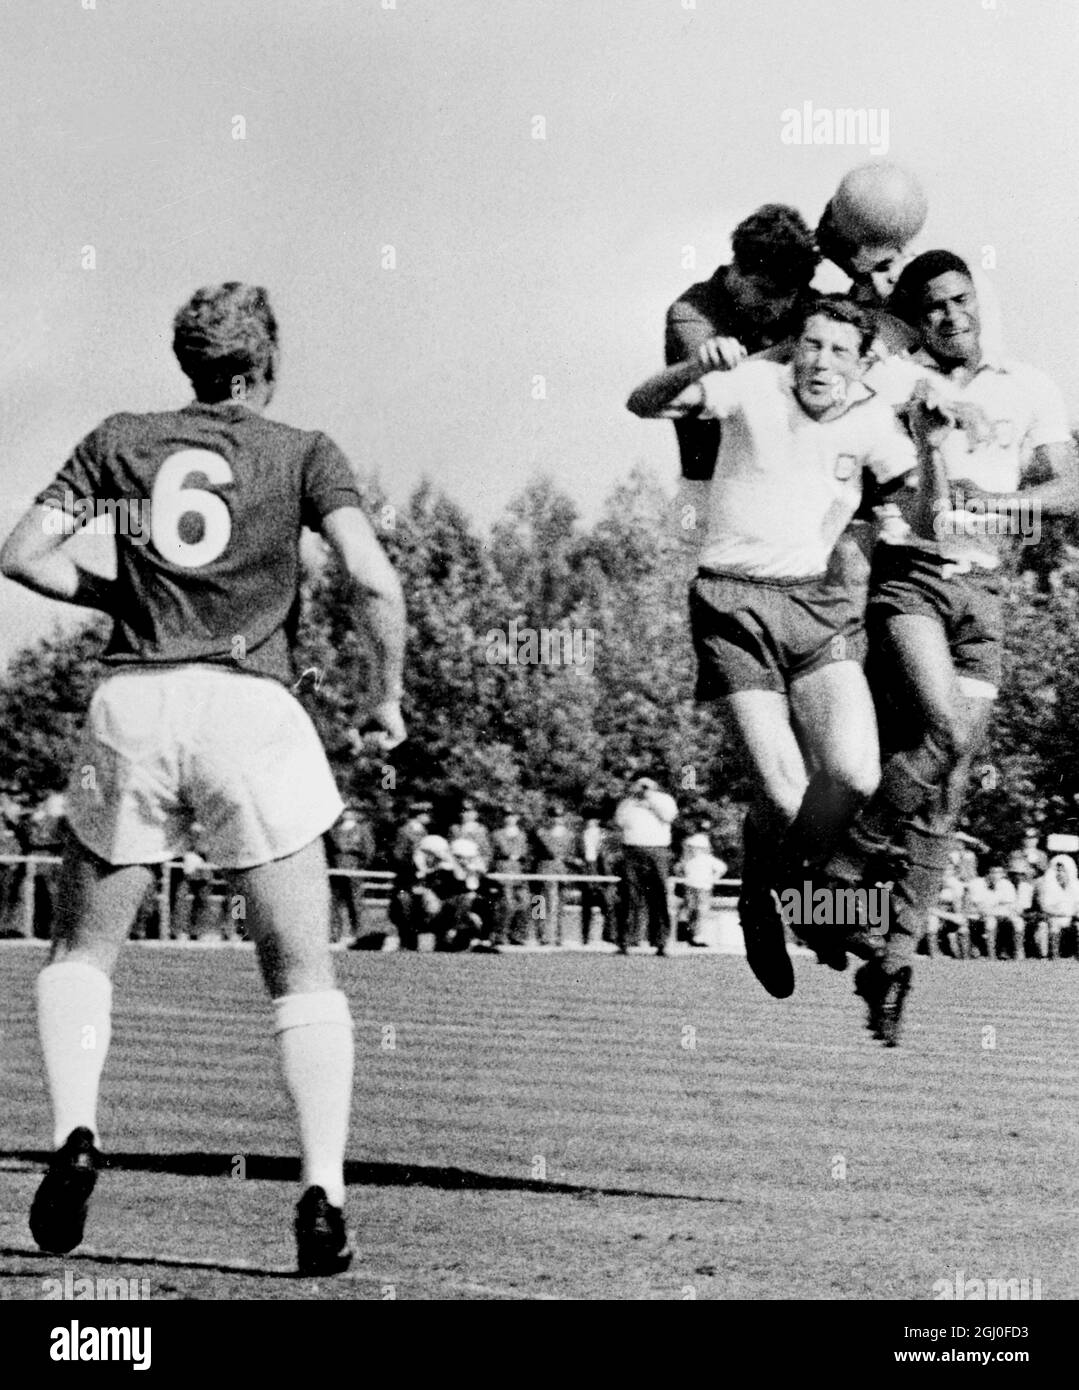 Portogallo / Inghilterra la Boby Moore (a sinistra) dell'Inghilterra guarda come i giocatori portoghesi Jose Augusto (in primo piano a sinistra) ed Eusebio (a destra) sfidano la palla durante la partita a Lisbona, Portogallo. 20 maggio 1964. Foto Stock